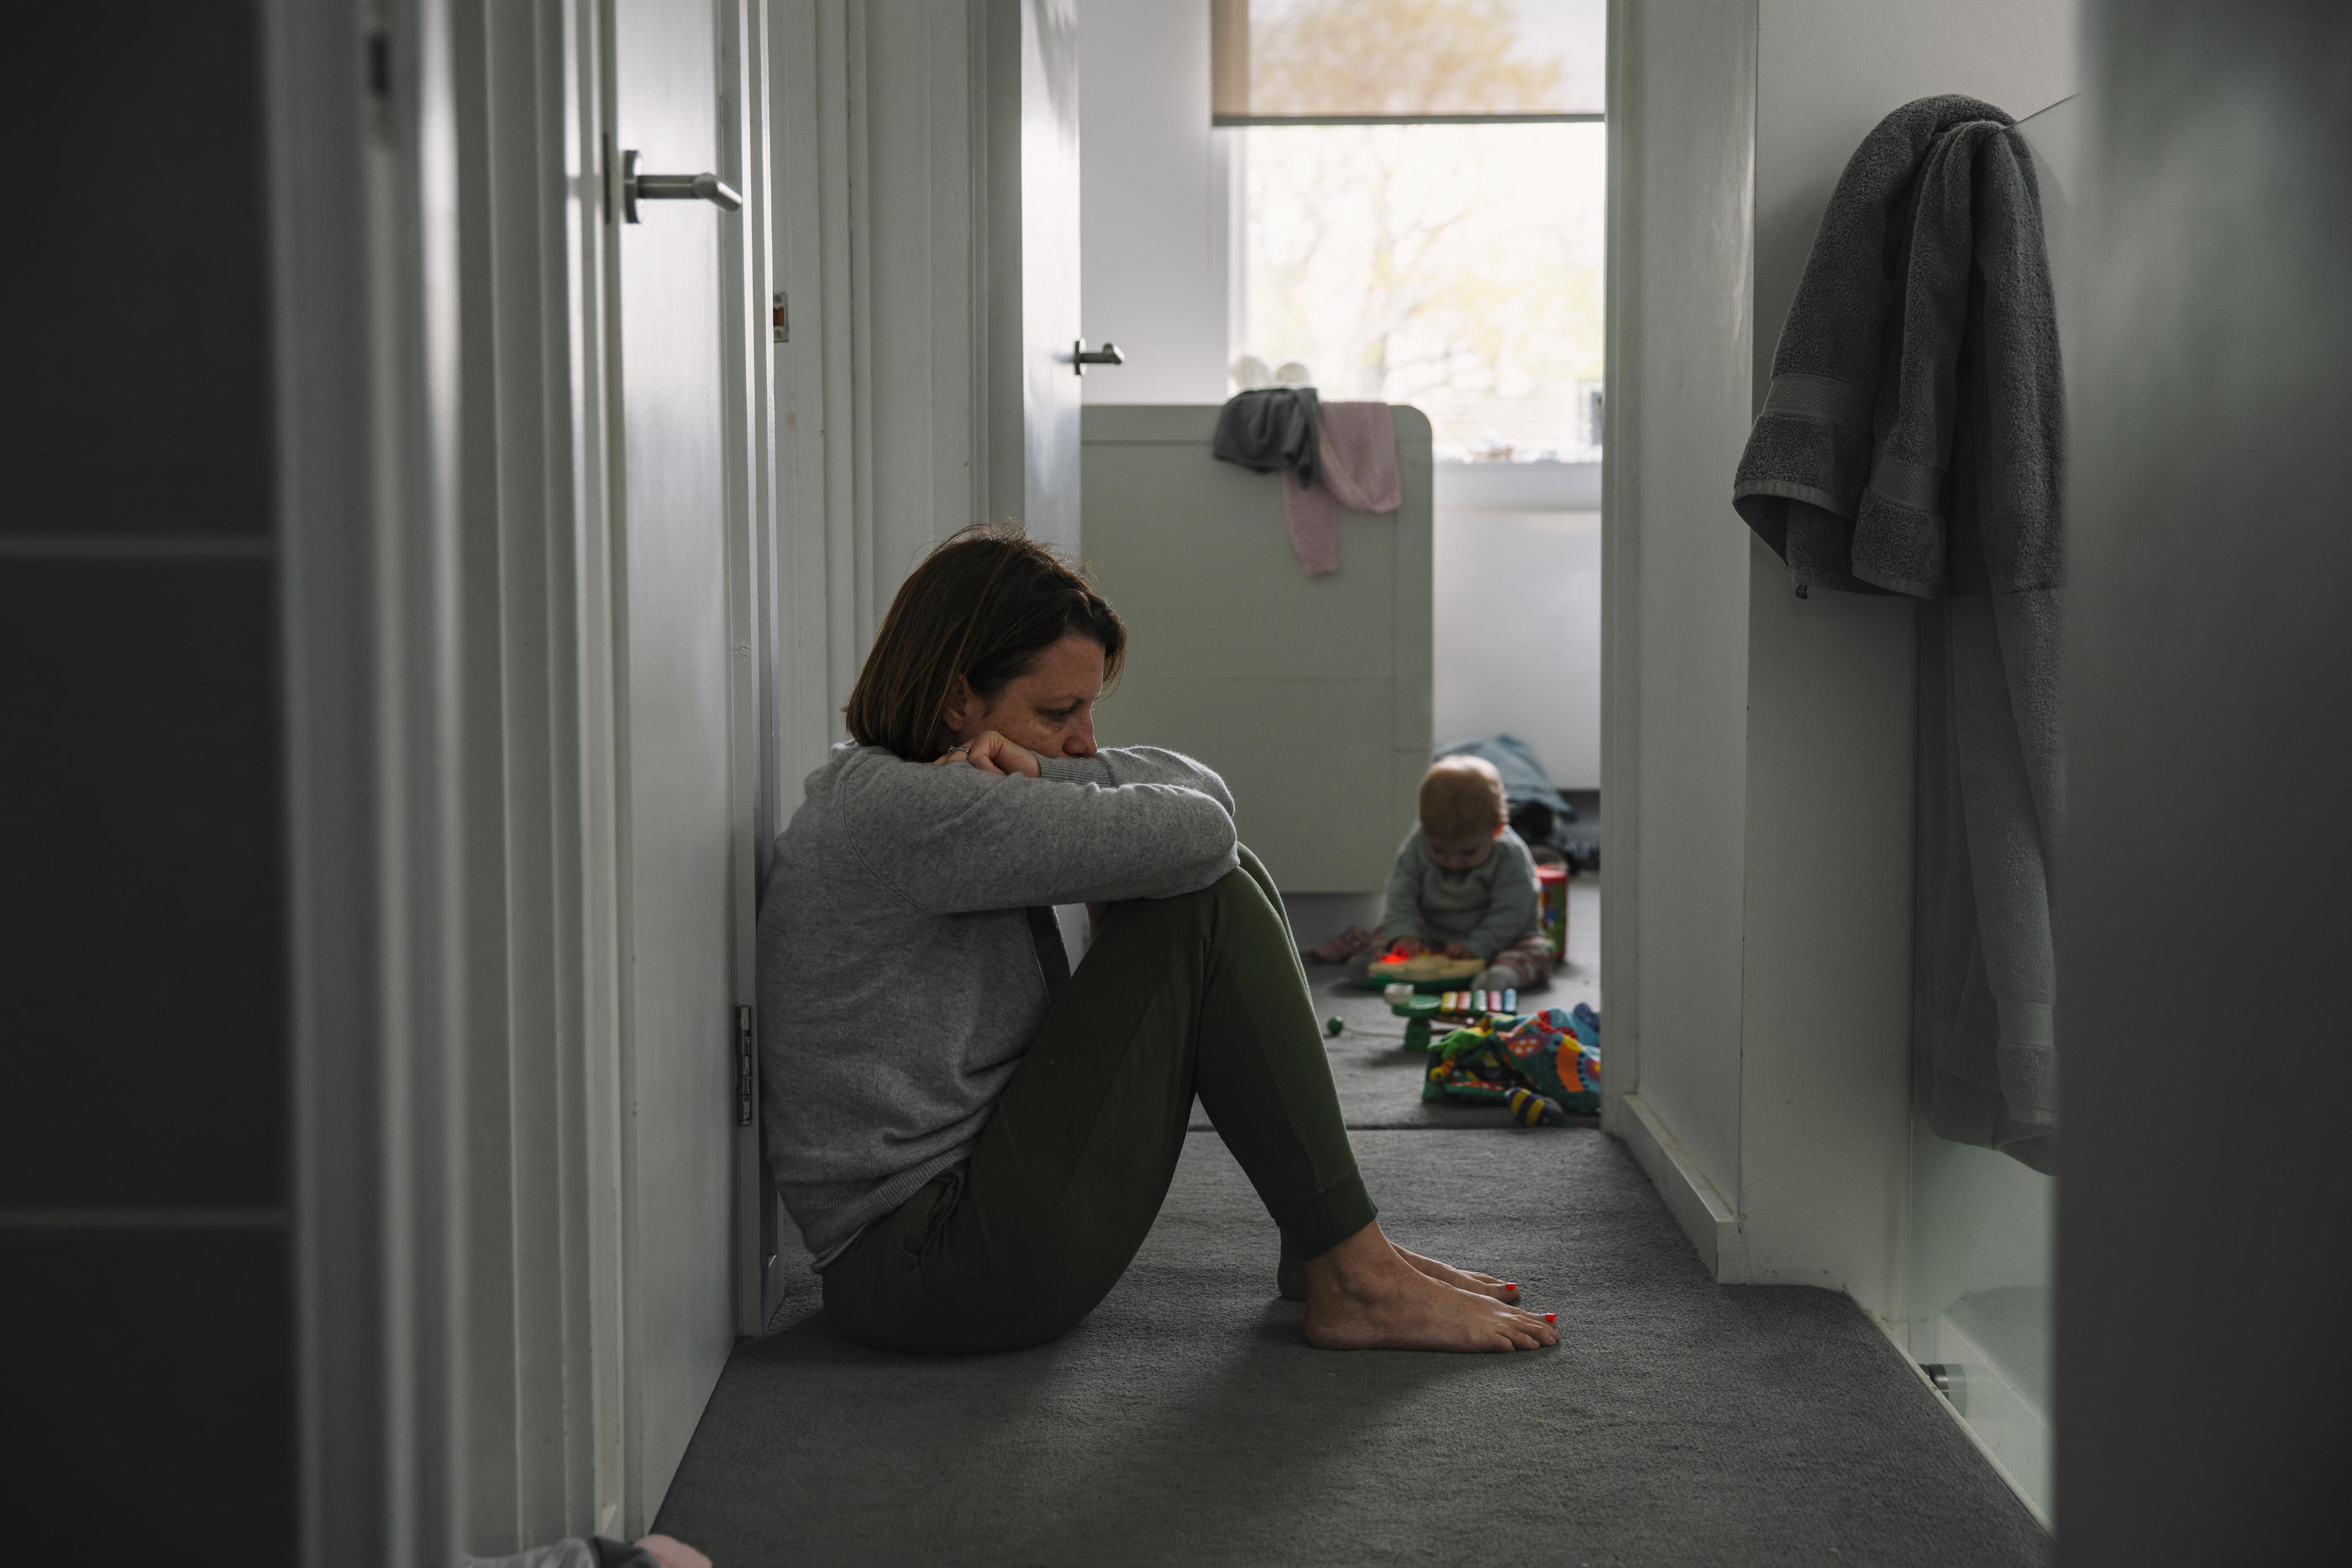 Le burn-out maternel est une puissante dépression qui éloigne une femme de ses enfants. Justin Paget